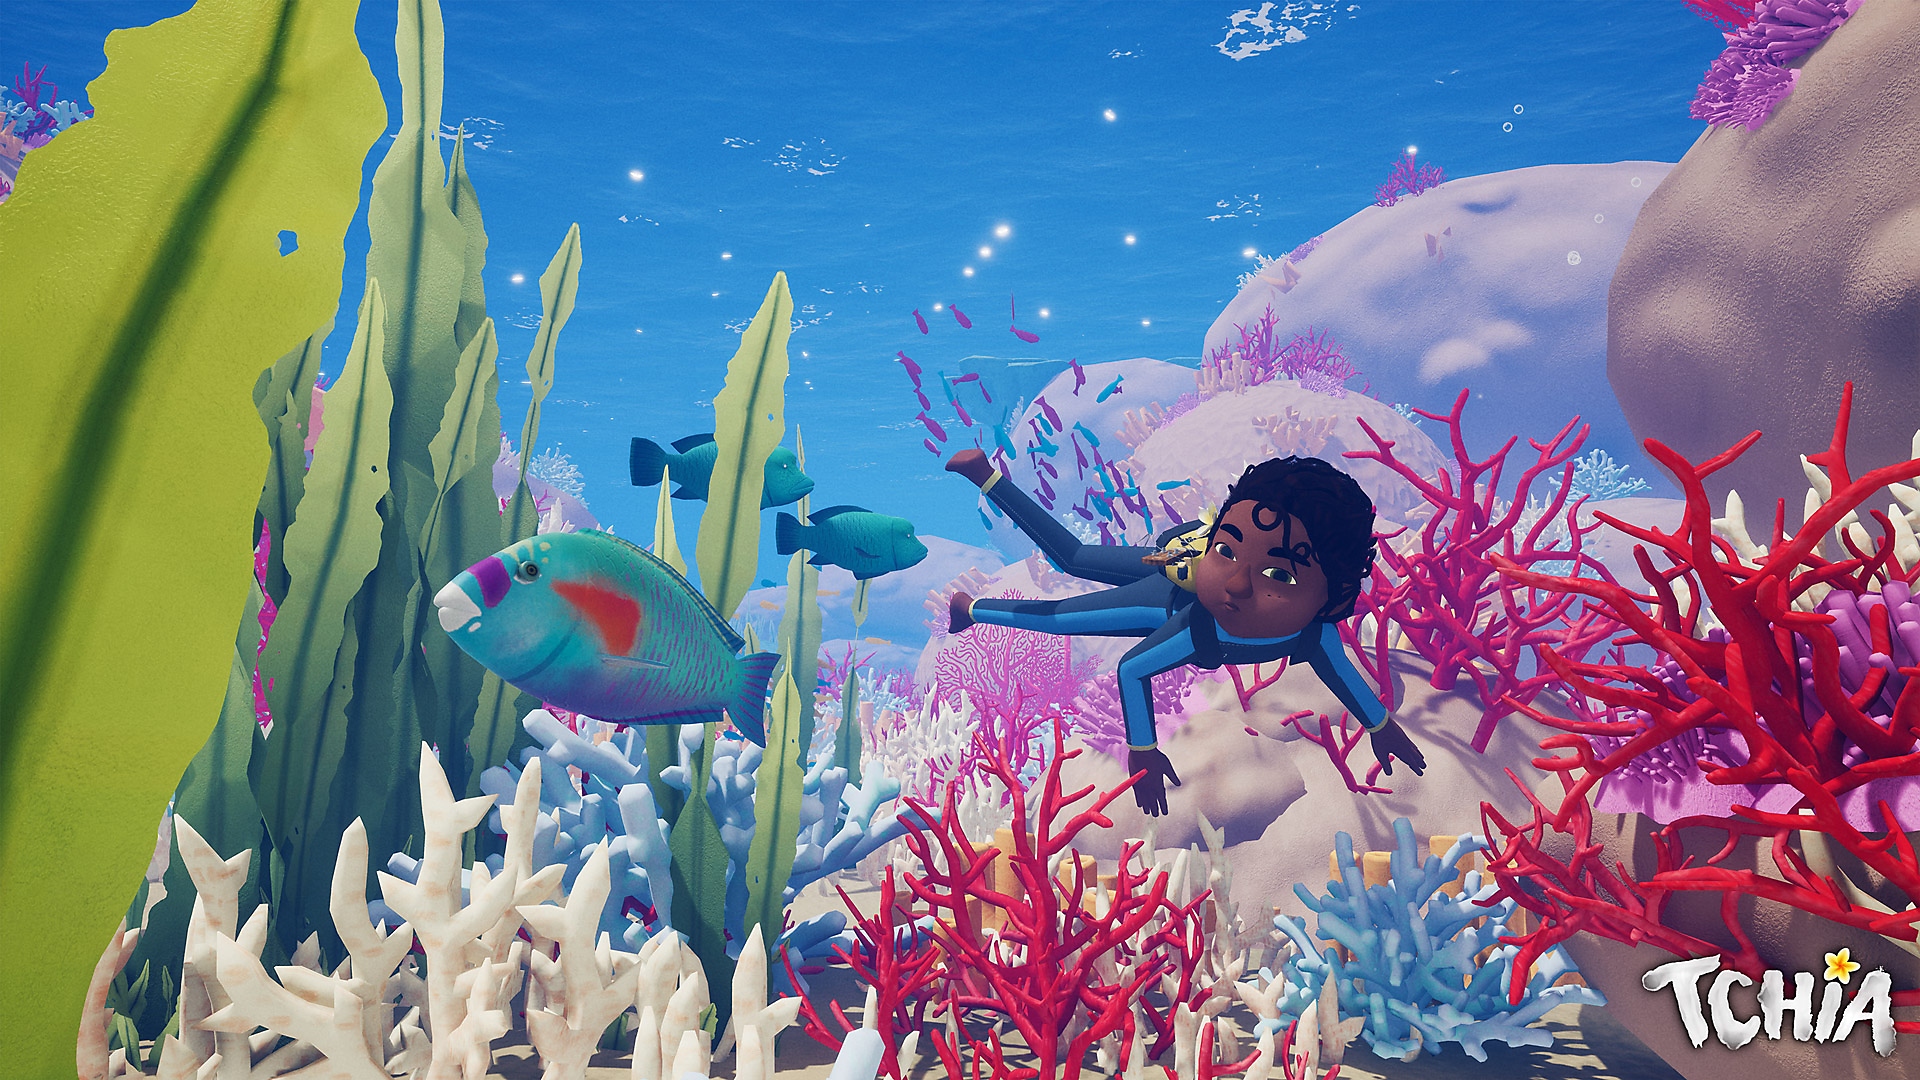 Arte hero de Tchia que muestra al personaje principal nadando en una escena submarina